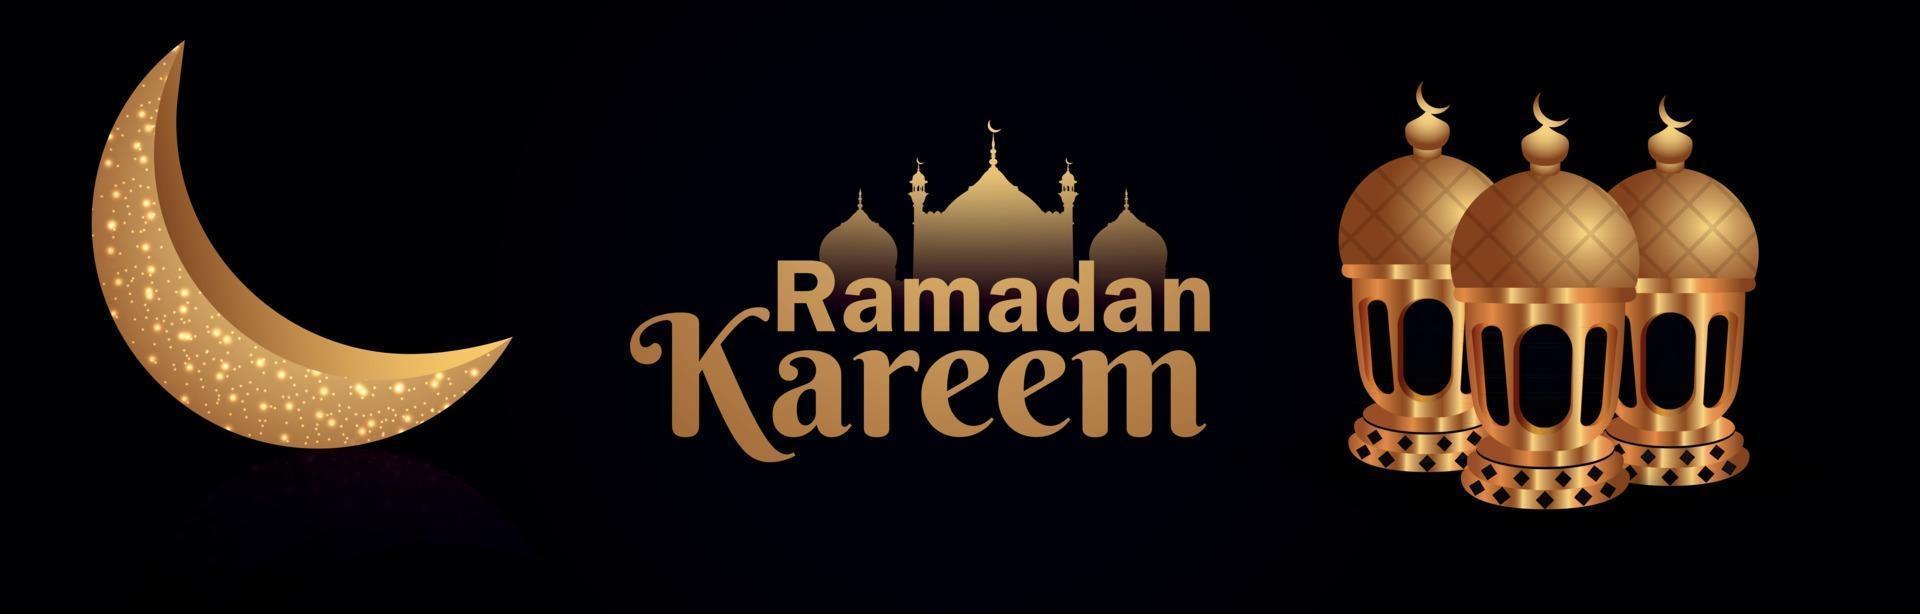 ramadan kareem viering banner met gouden lantaarn en maan vector